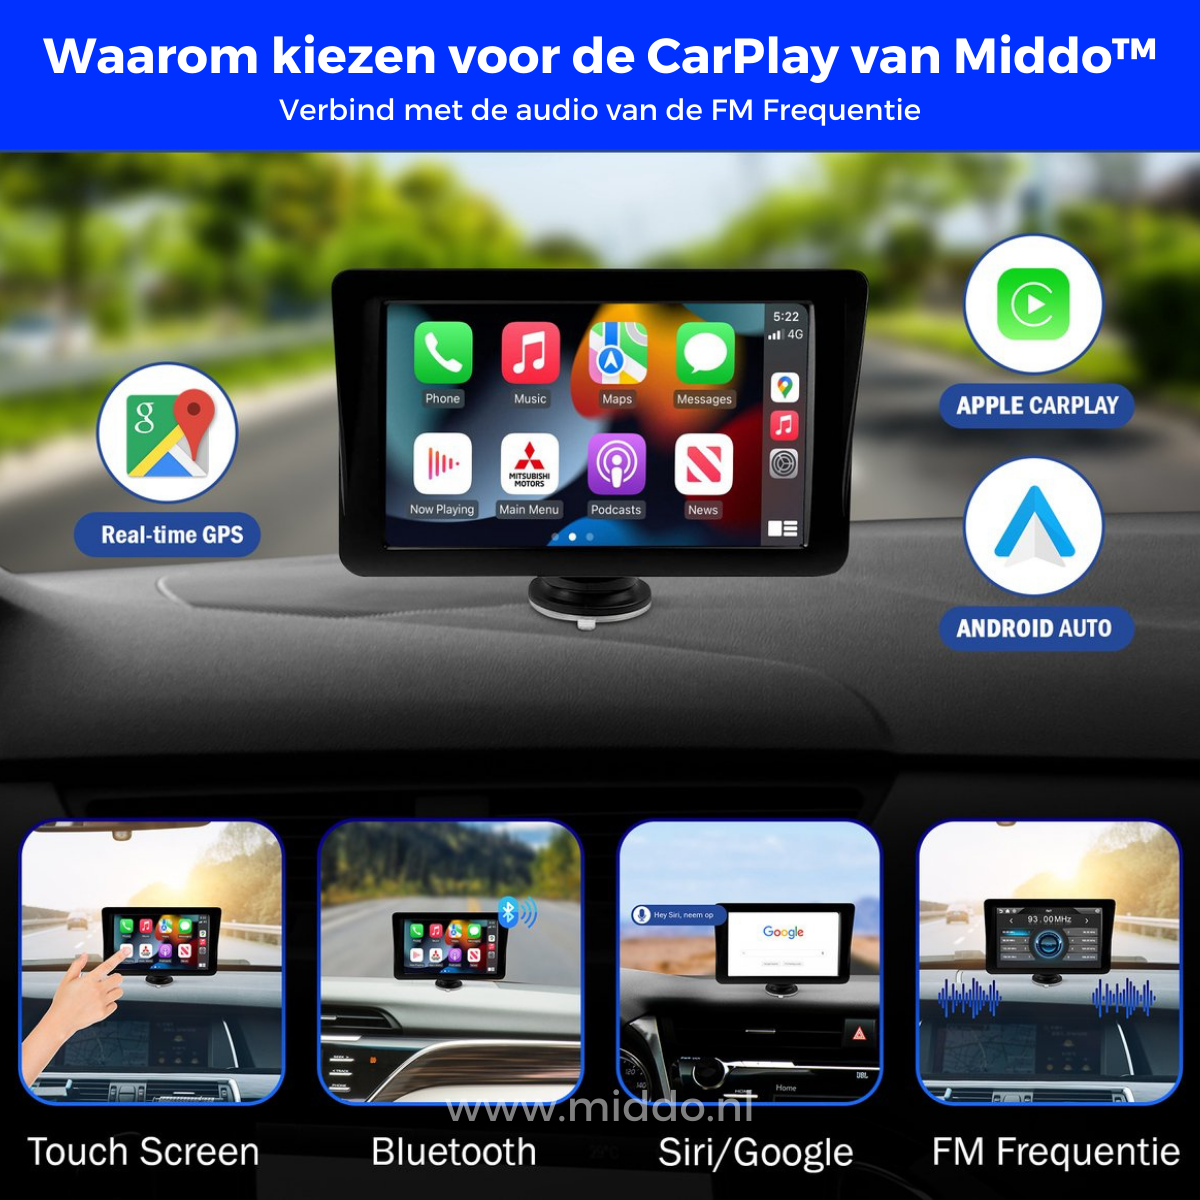 CarPlay staat vast op het dashboard van auto met  4 foto's eronder van hoe je het kunt gebruiken, met touchscreen bluetooth siri/google en radio.